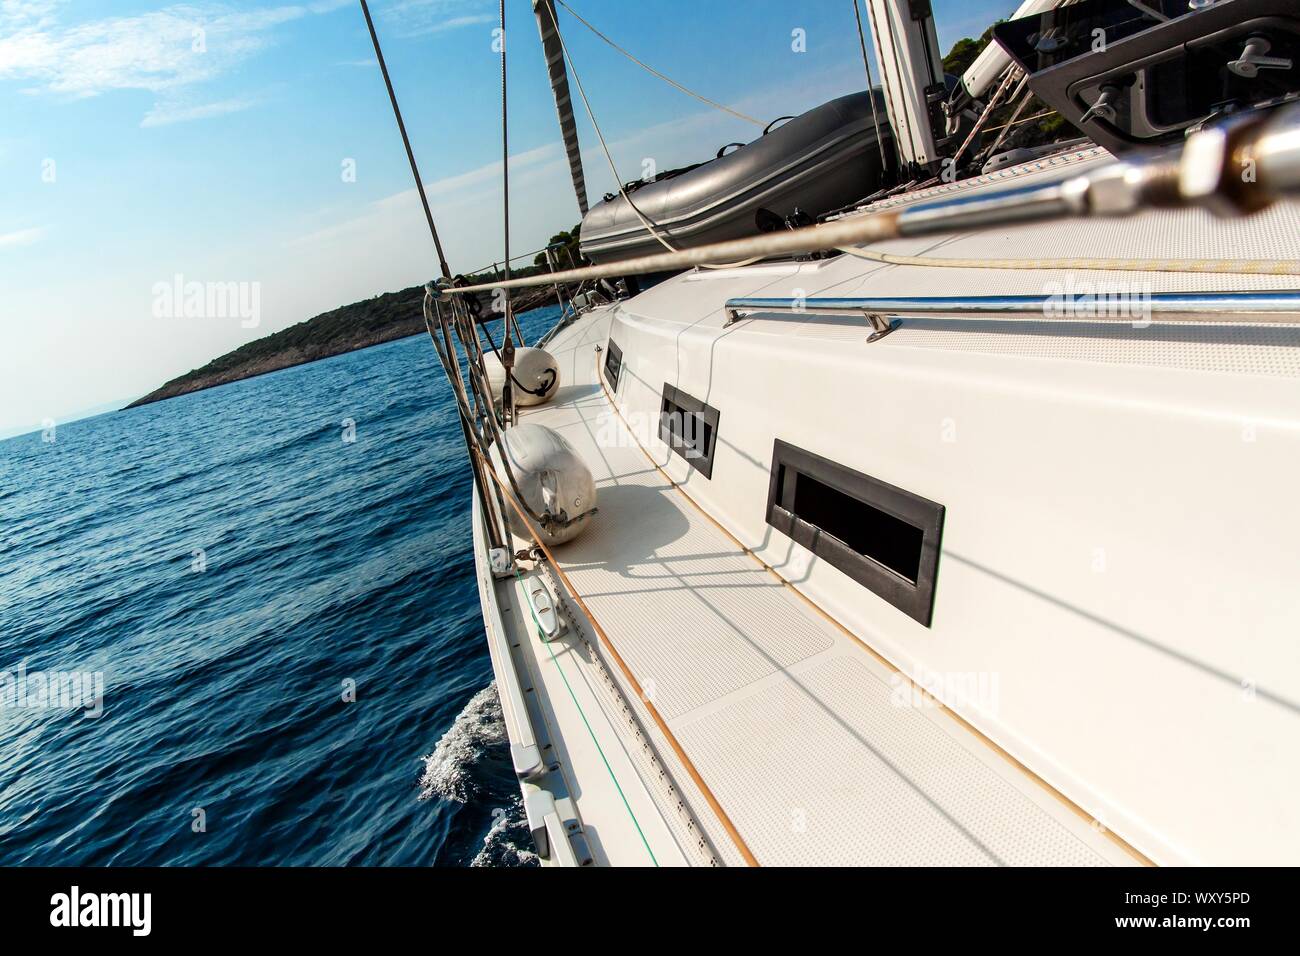 Vacanze a vela in Croazia. Il romanticismo di yachting. Barca a vela sul mare nei pressi di isole croate. Yacht deck. Crociera avventura. Foto Stock